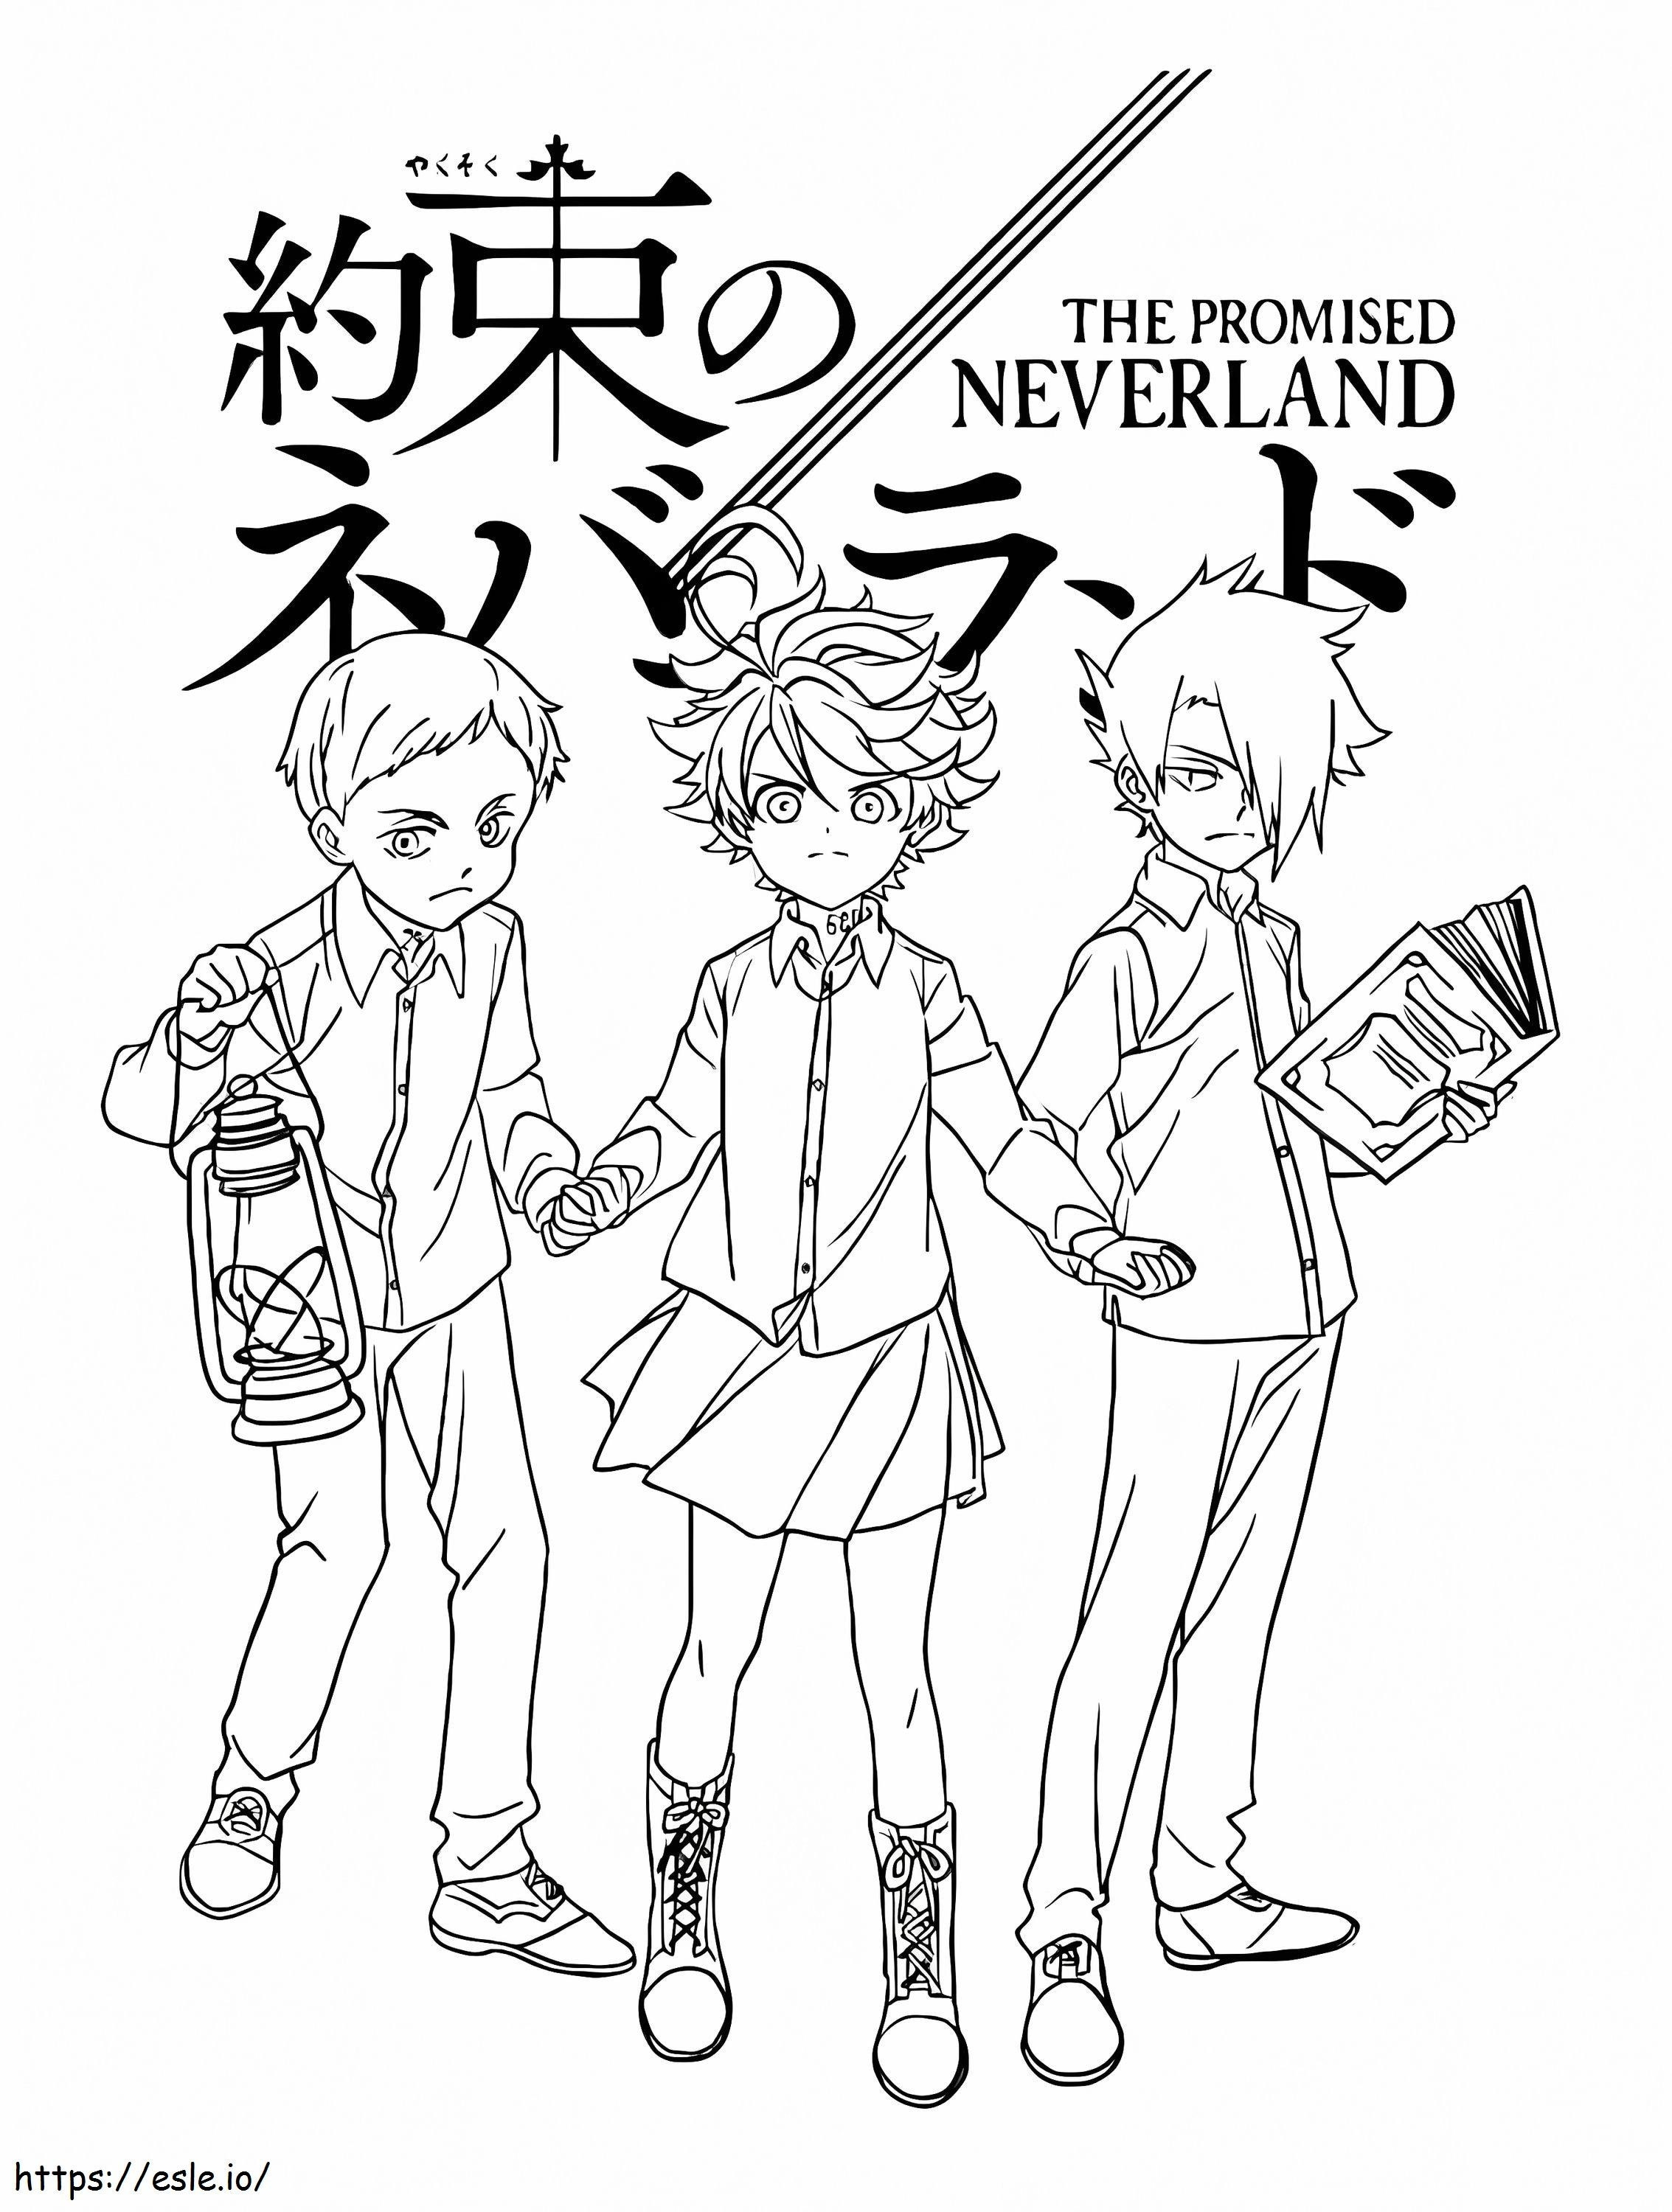 Vaat Edilen Neverland Posteri boyama